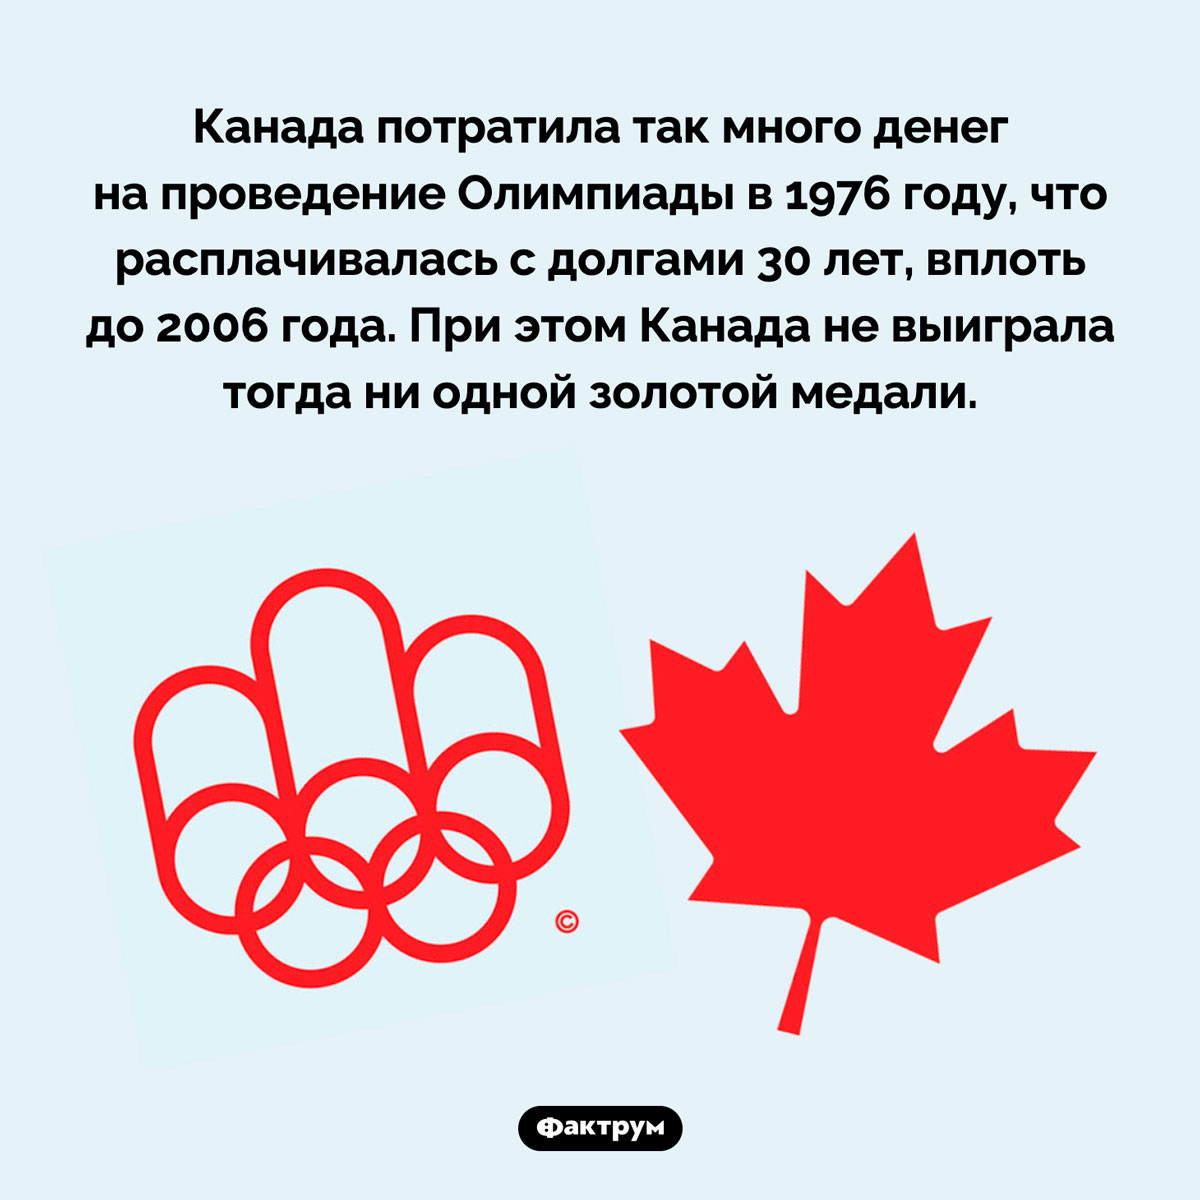 Канада расплачивалась за Олимпиаду 30 лет. Канада потратила так много денег на проведение Олимпиады в 1976 году, что расплачивалась с долгами 30 лет, вплоть до 2006 года. При этом Канада не выиграла тогда ни одной золотой медали.